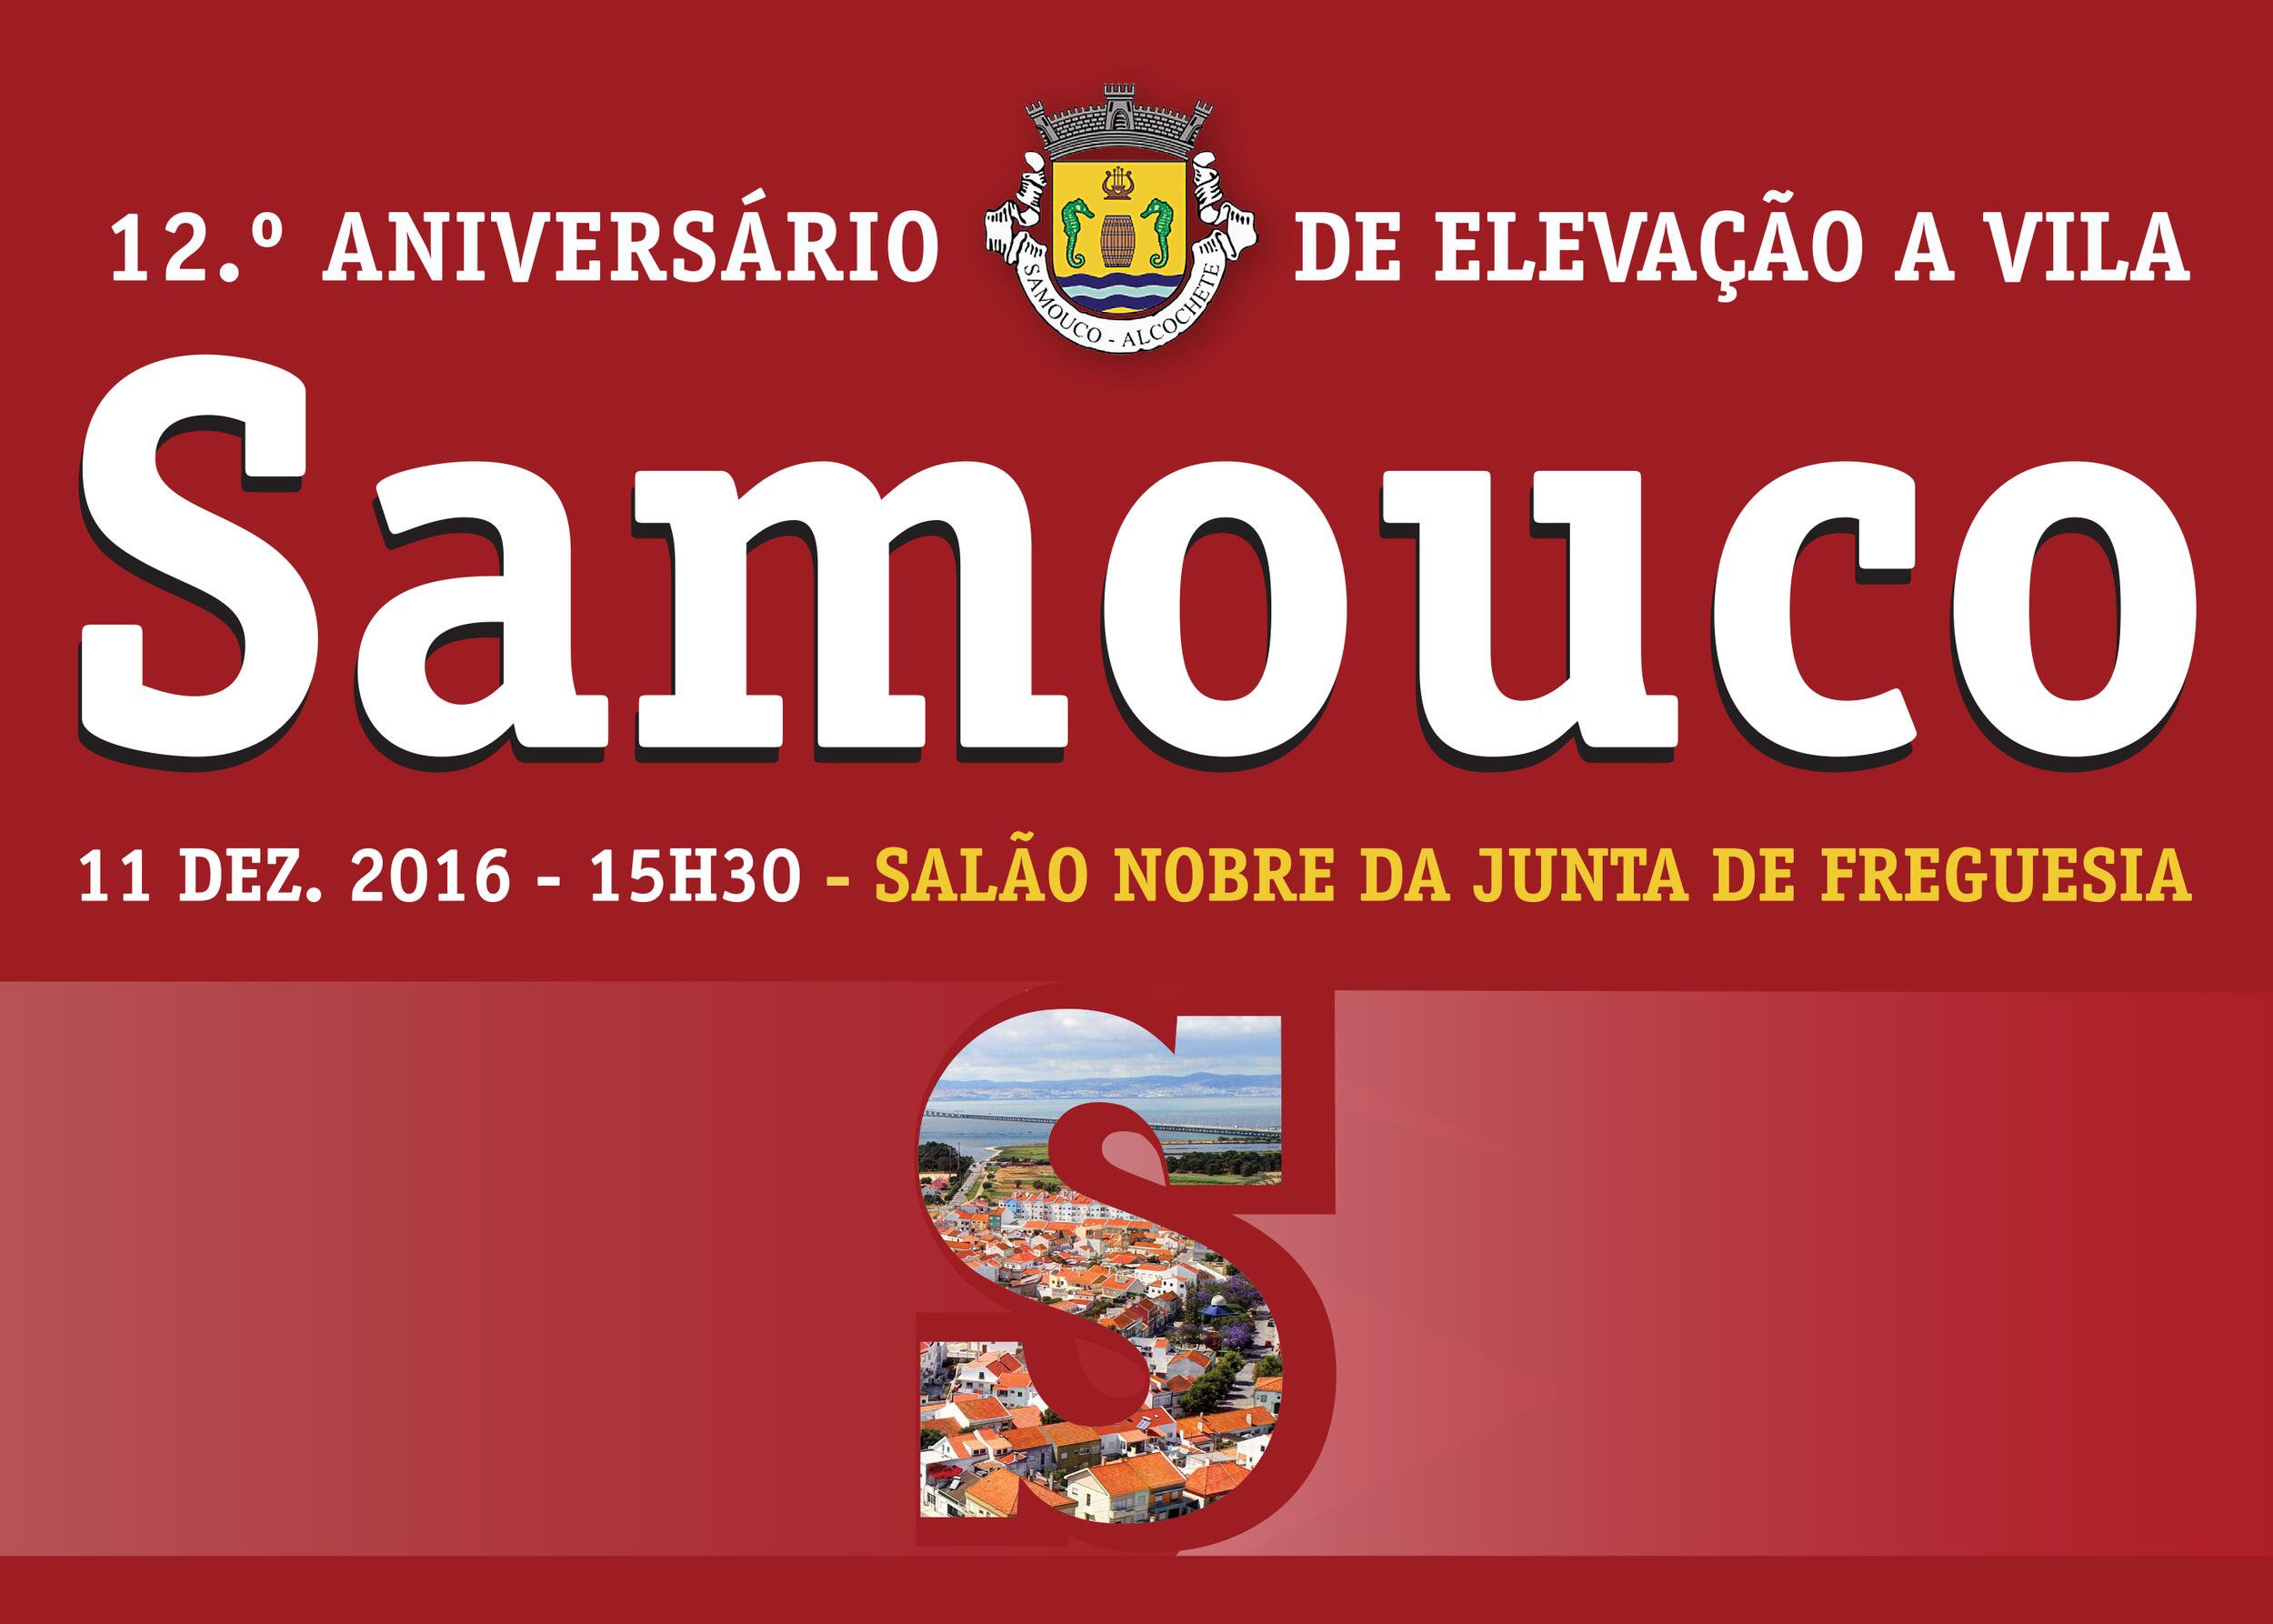 Samouco comemora 12.º aniversário de elevação a Vila